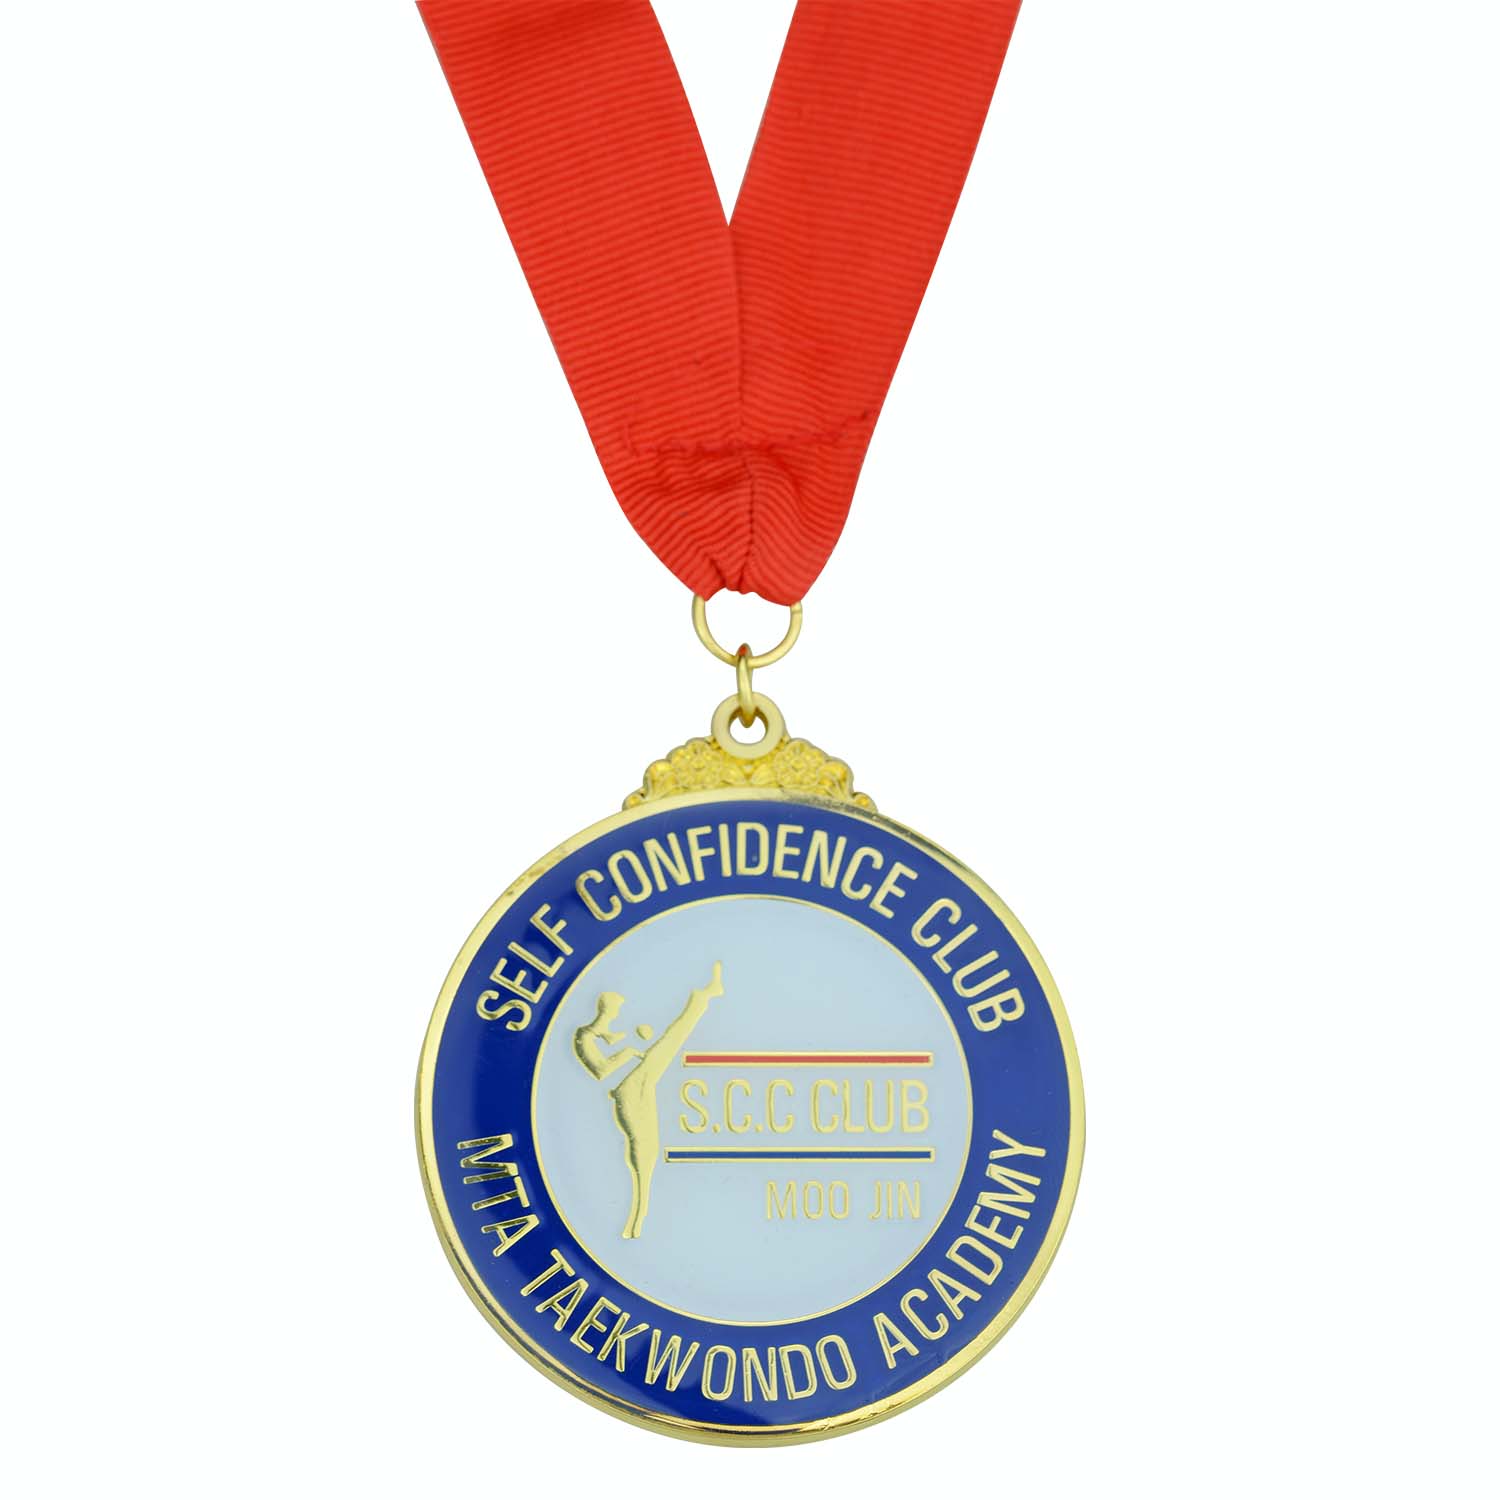 Muuzaji wa Medali ya Uchina Anayeweka Glodi Maalum ya Medali ya Taekwondo Mwenye Medali (5)